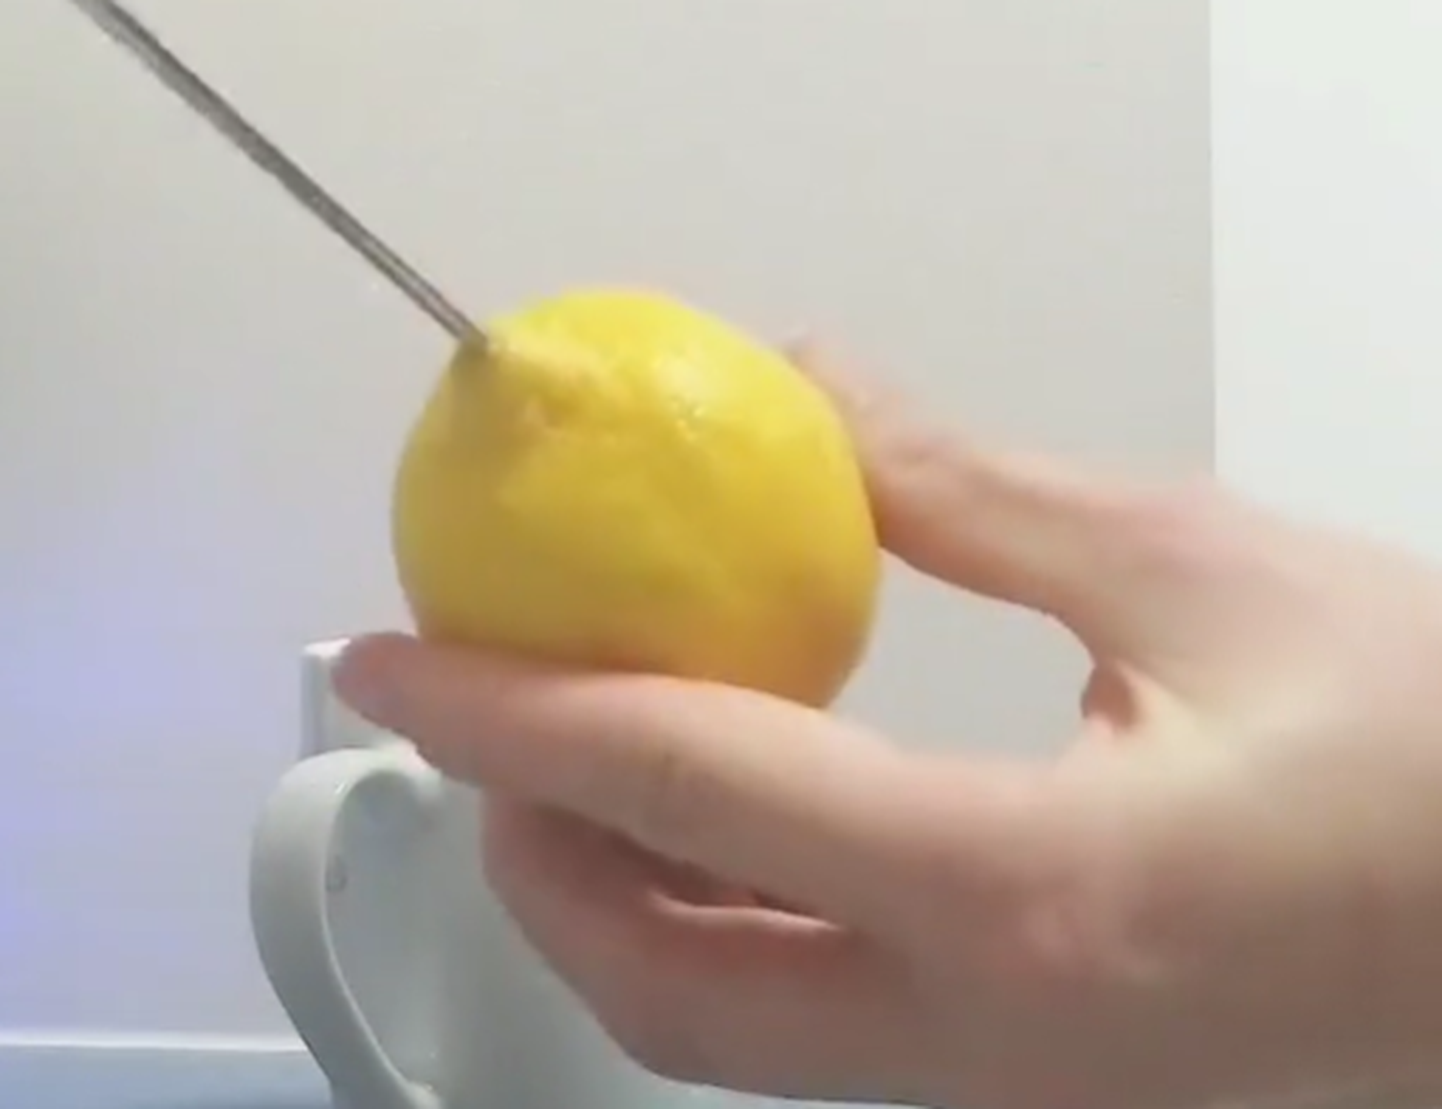 Lihtne nipp, kuidas sidrunist mahl välja pigistada.